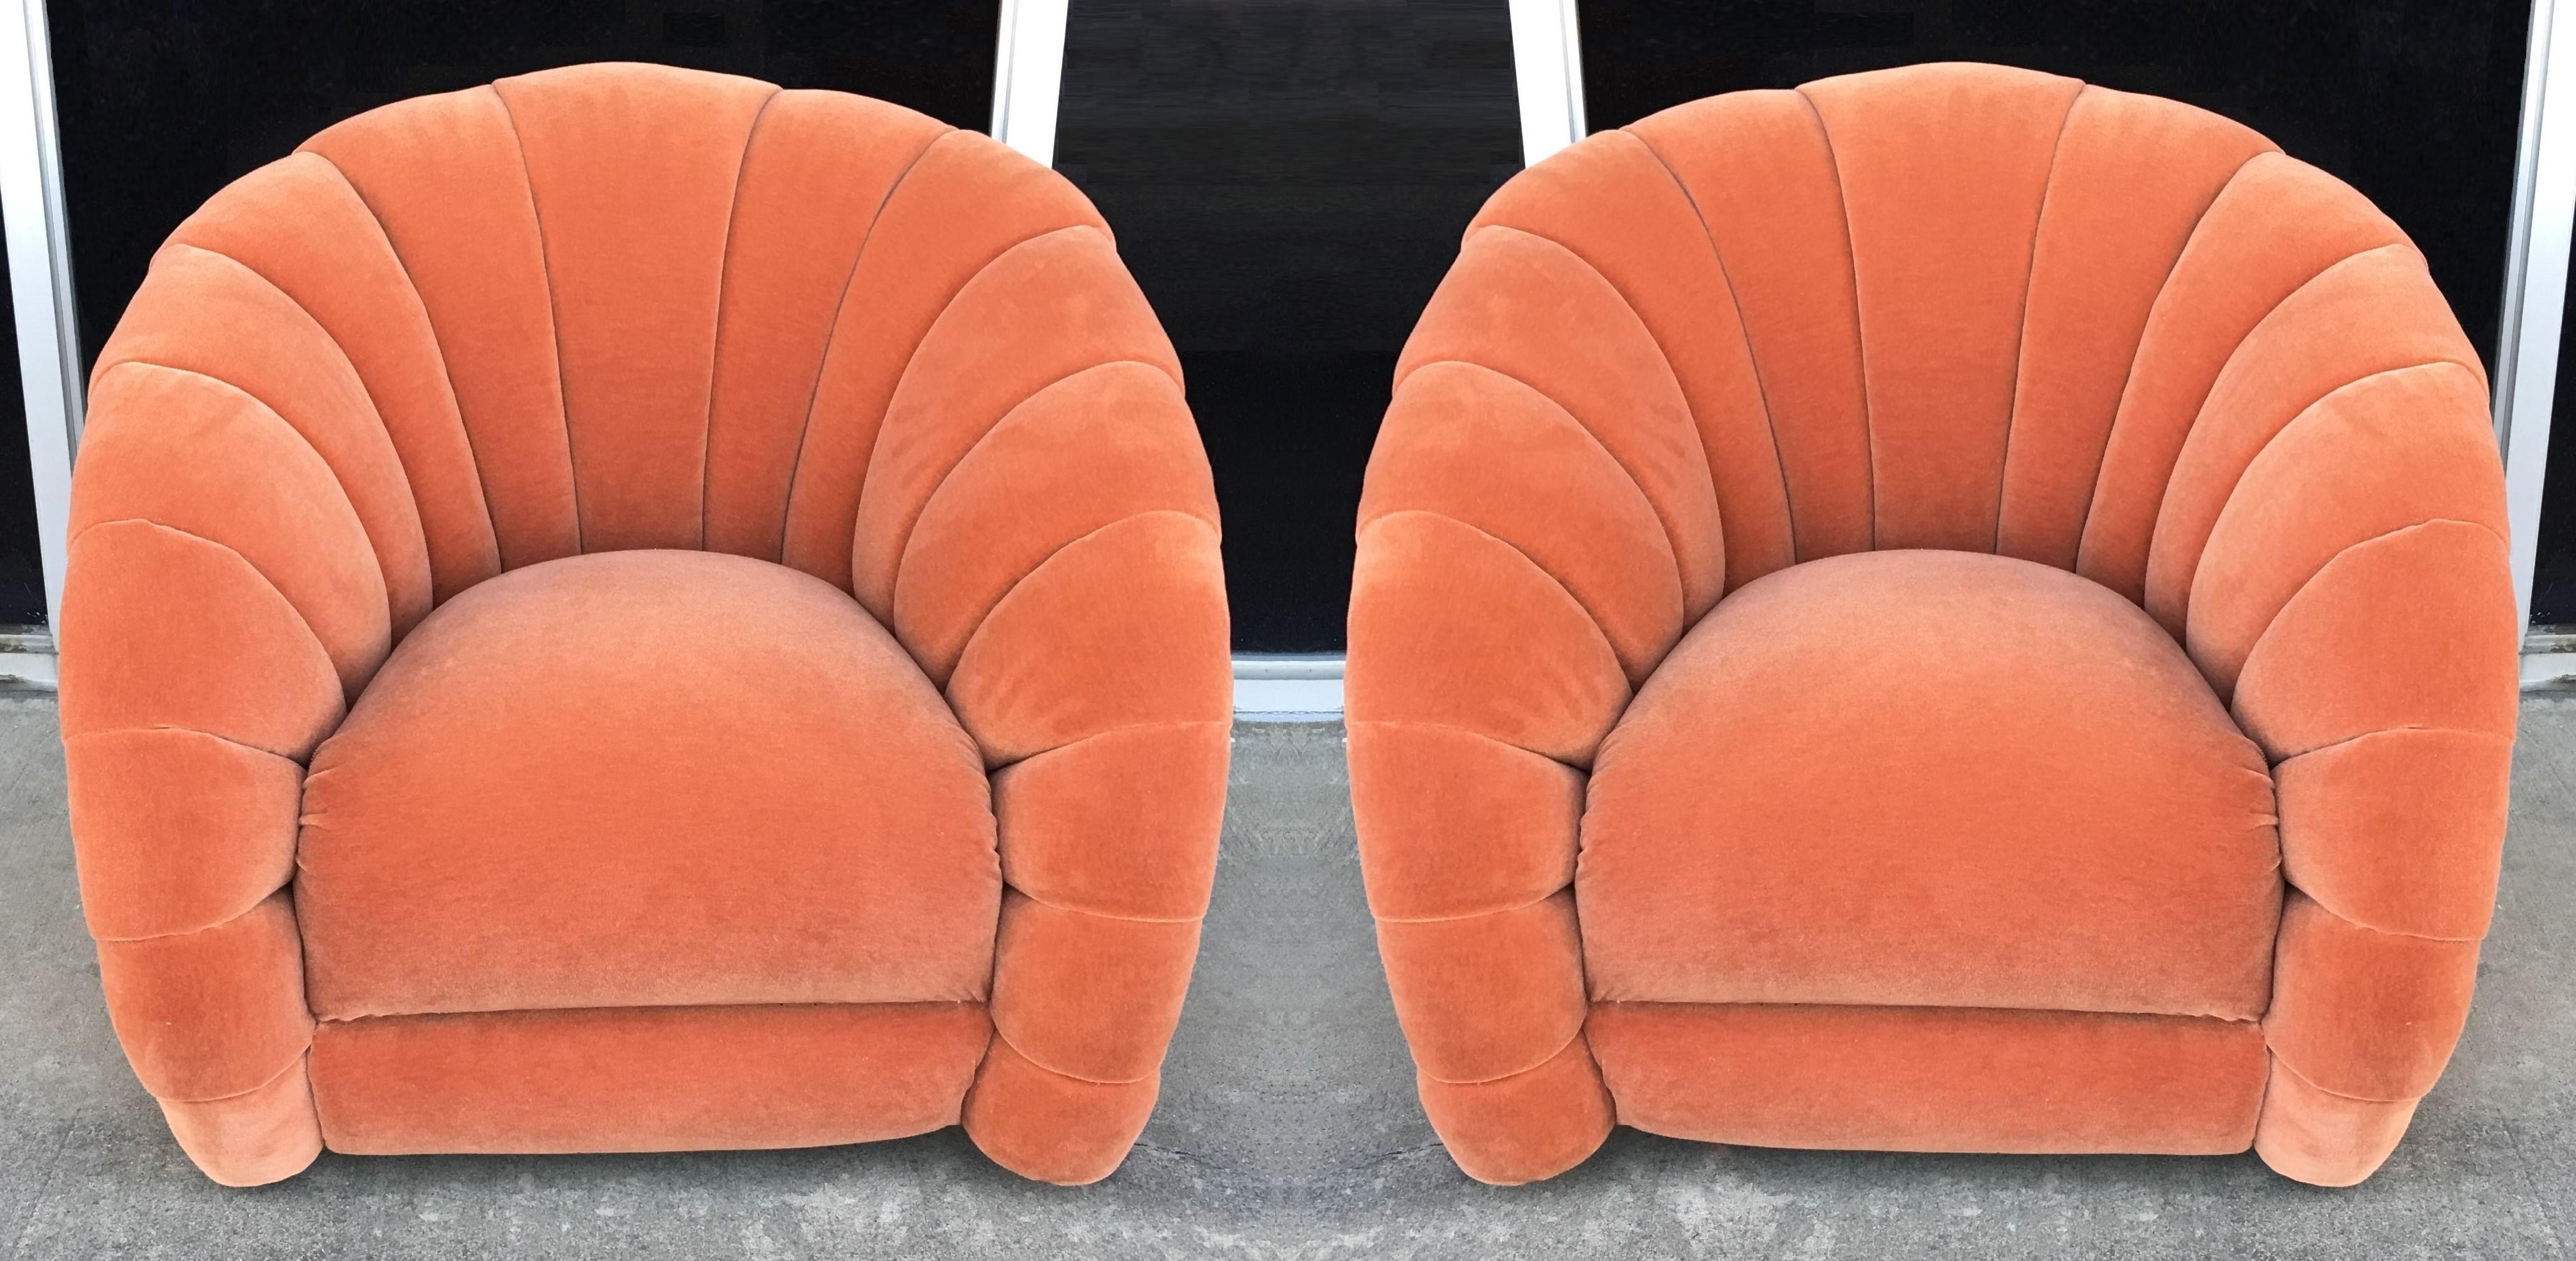 Paire de chaises longues assorties, élégantes et très confortables, conçues par Vladimir Kagan pour Directional Inc. au début des années 1980. Chaque fauteuil pivotant rembourré de manière professionnelle et personnalisée, style dos en tonneau, est